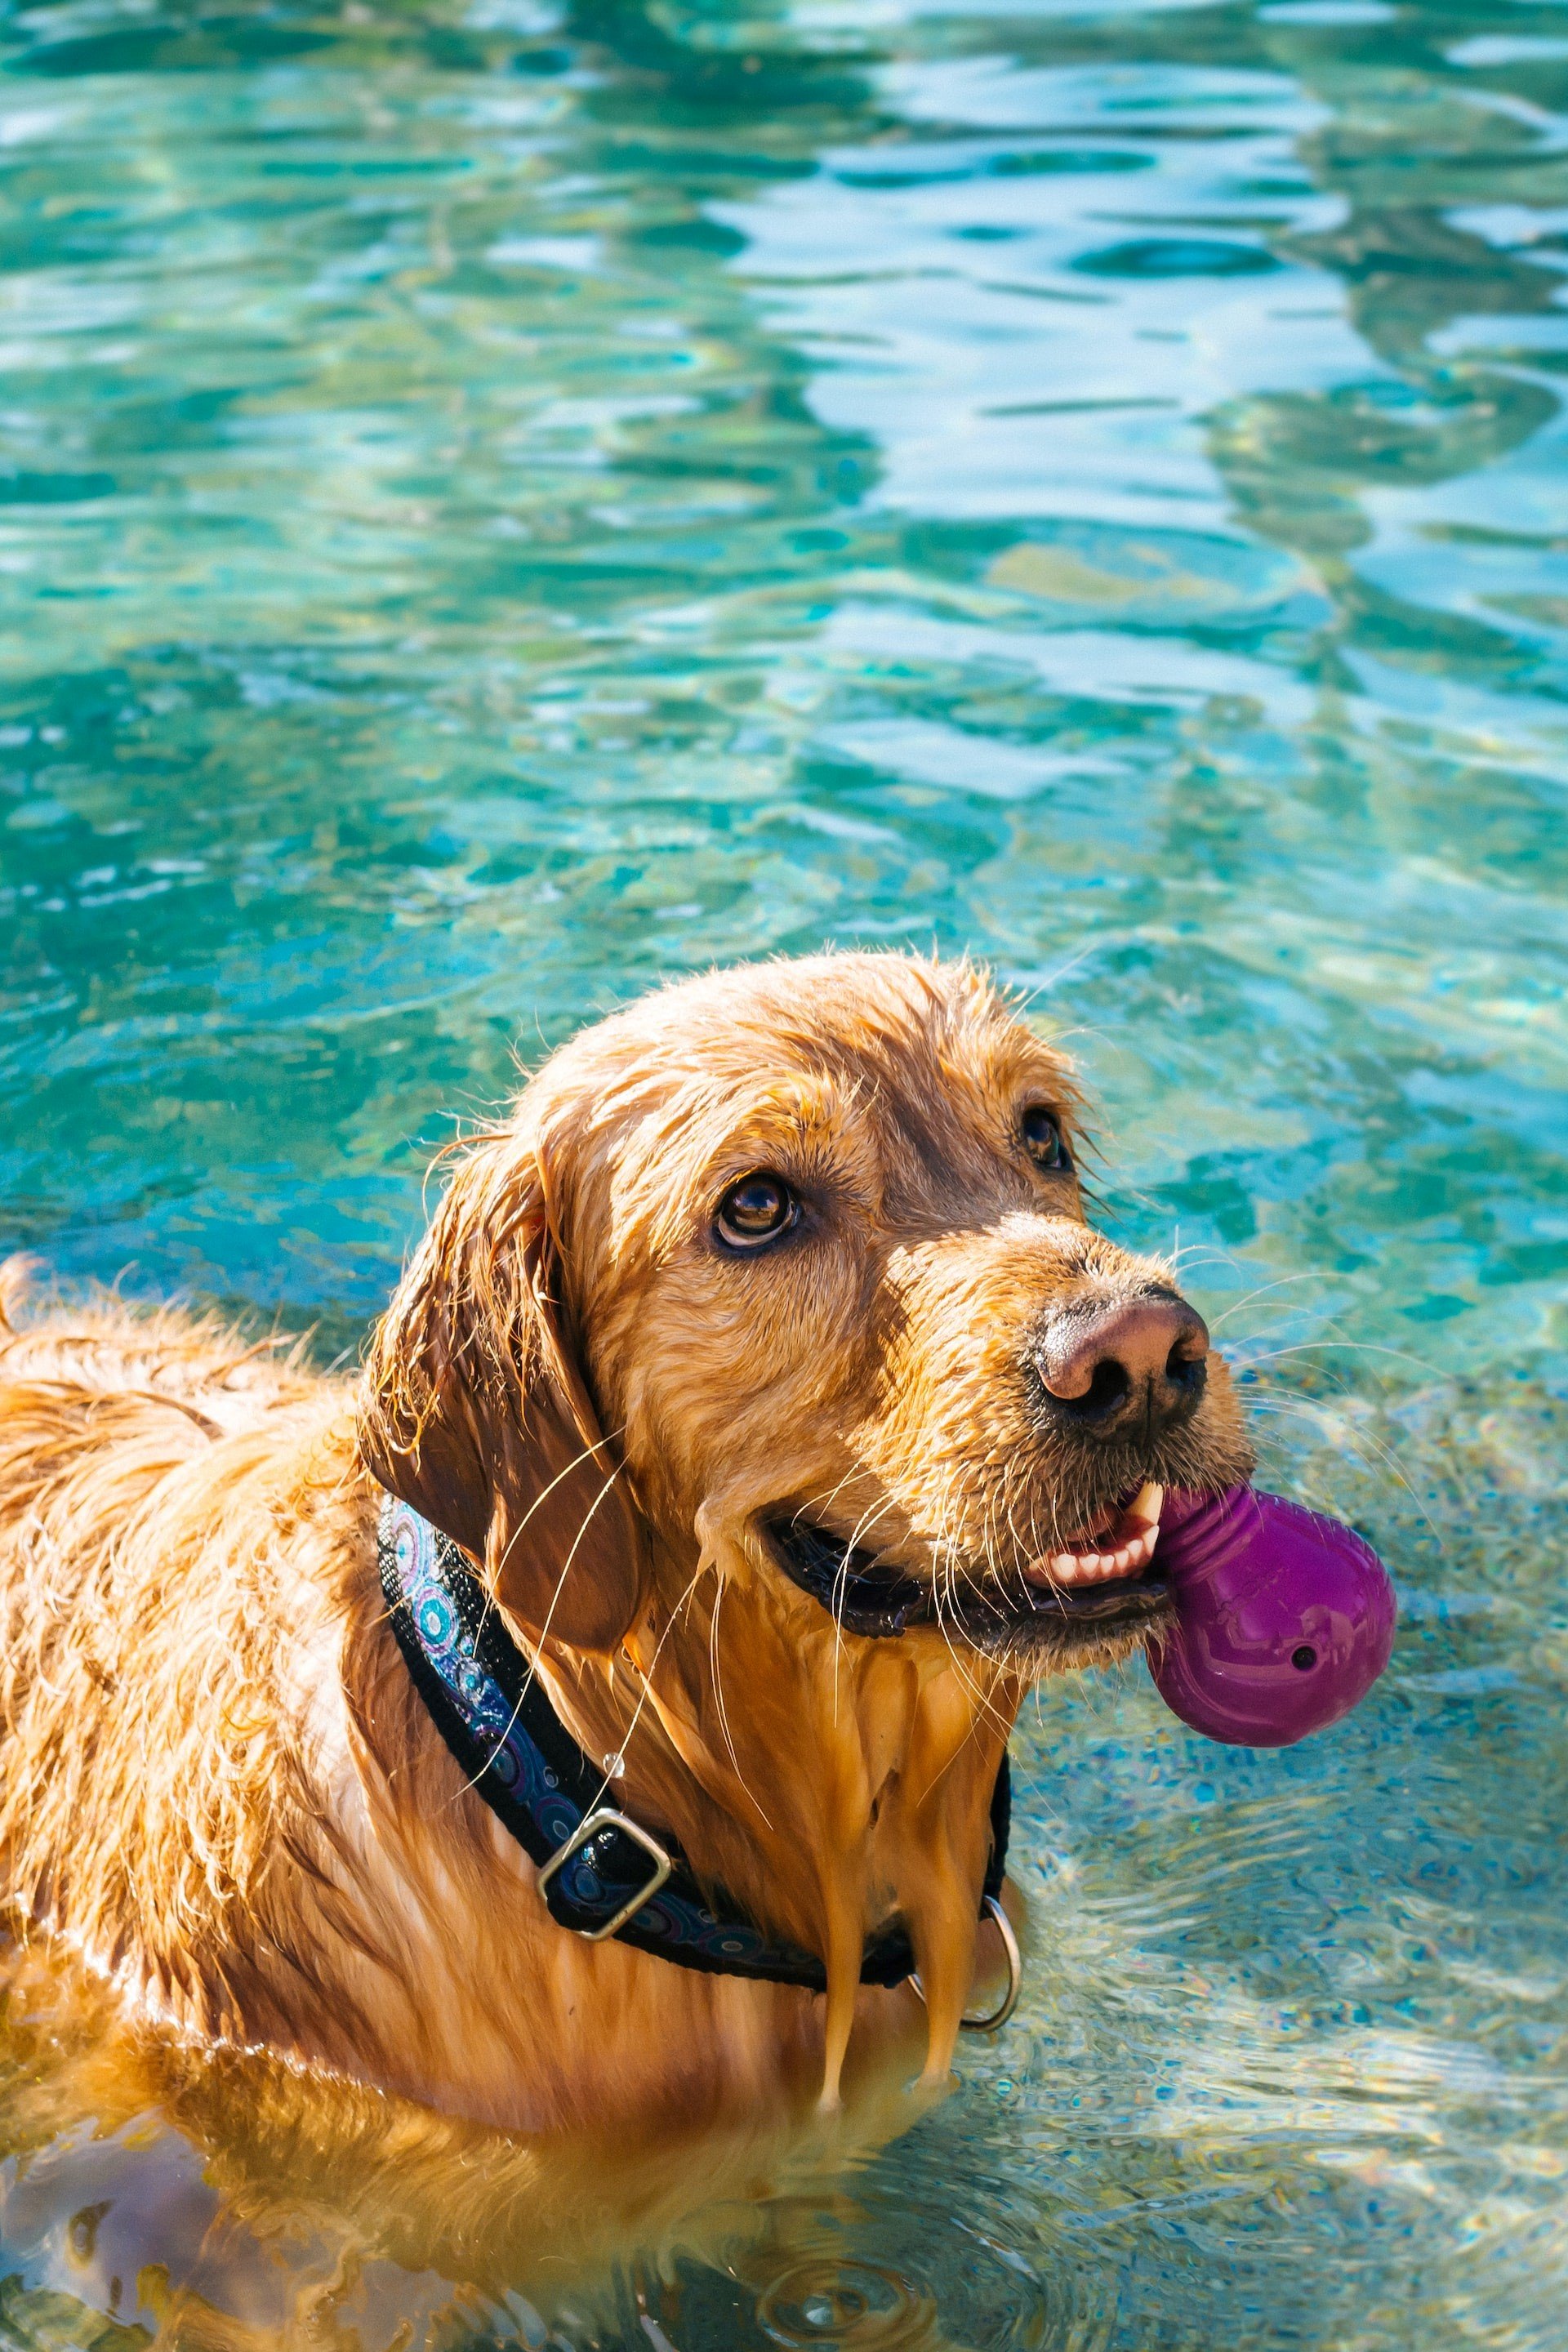 Dog in pool.jpg